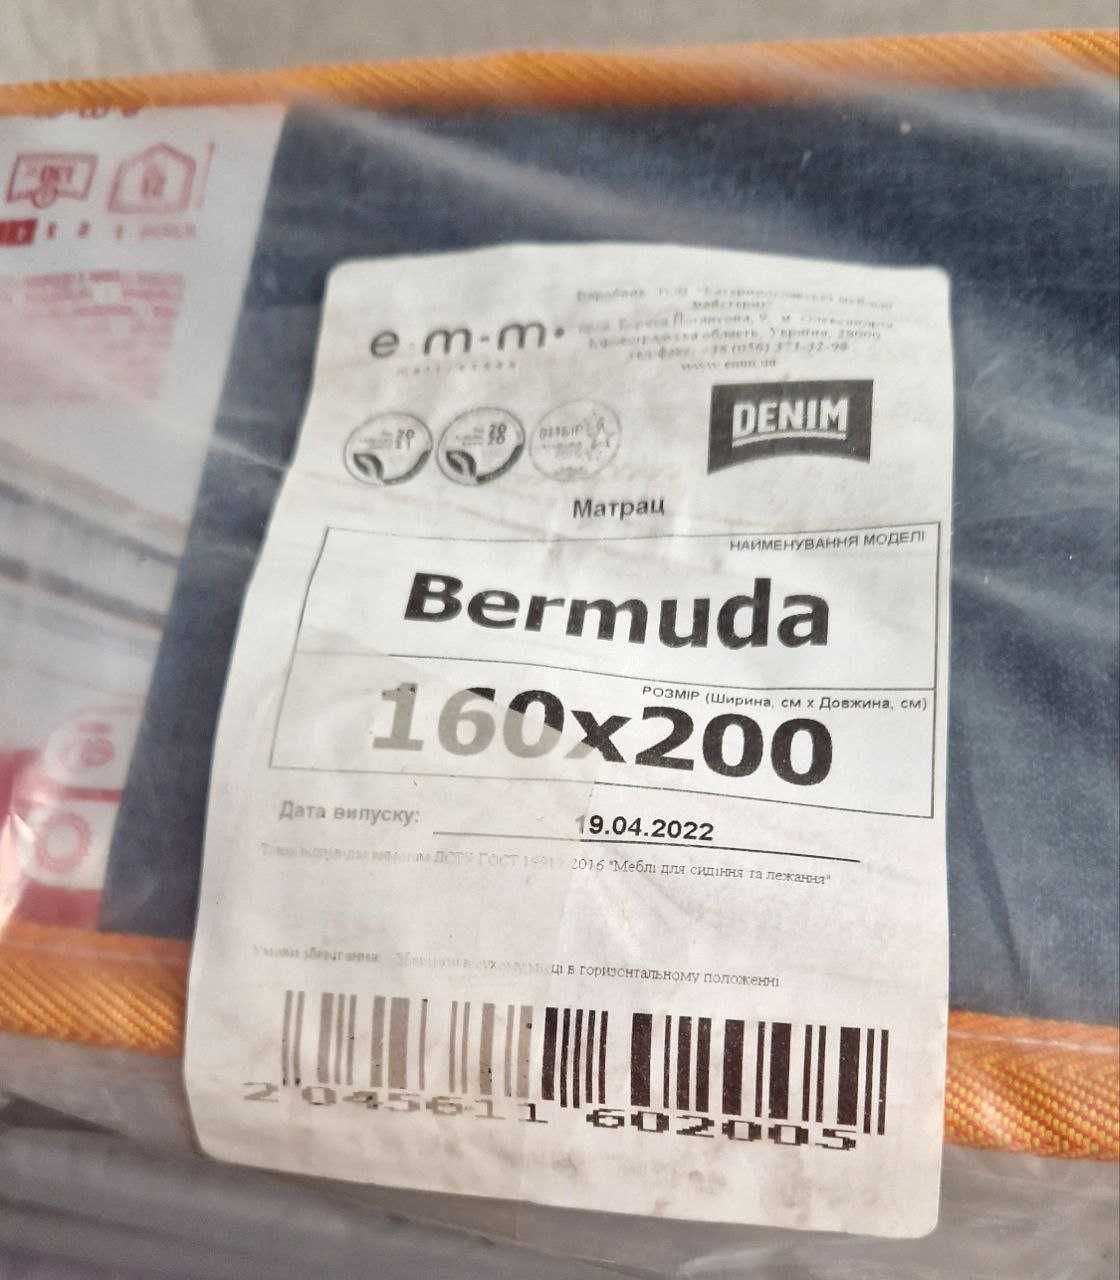 Продам матрац 160*200 см Denim Bermuda майже новий за класною ціною